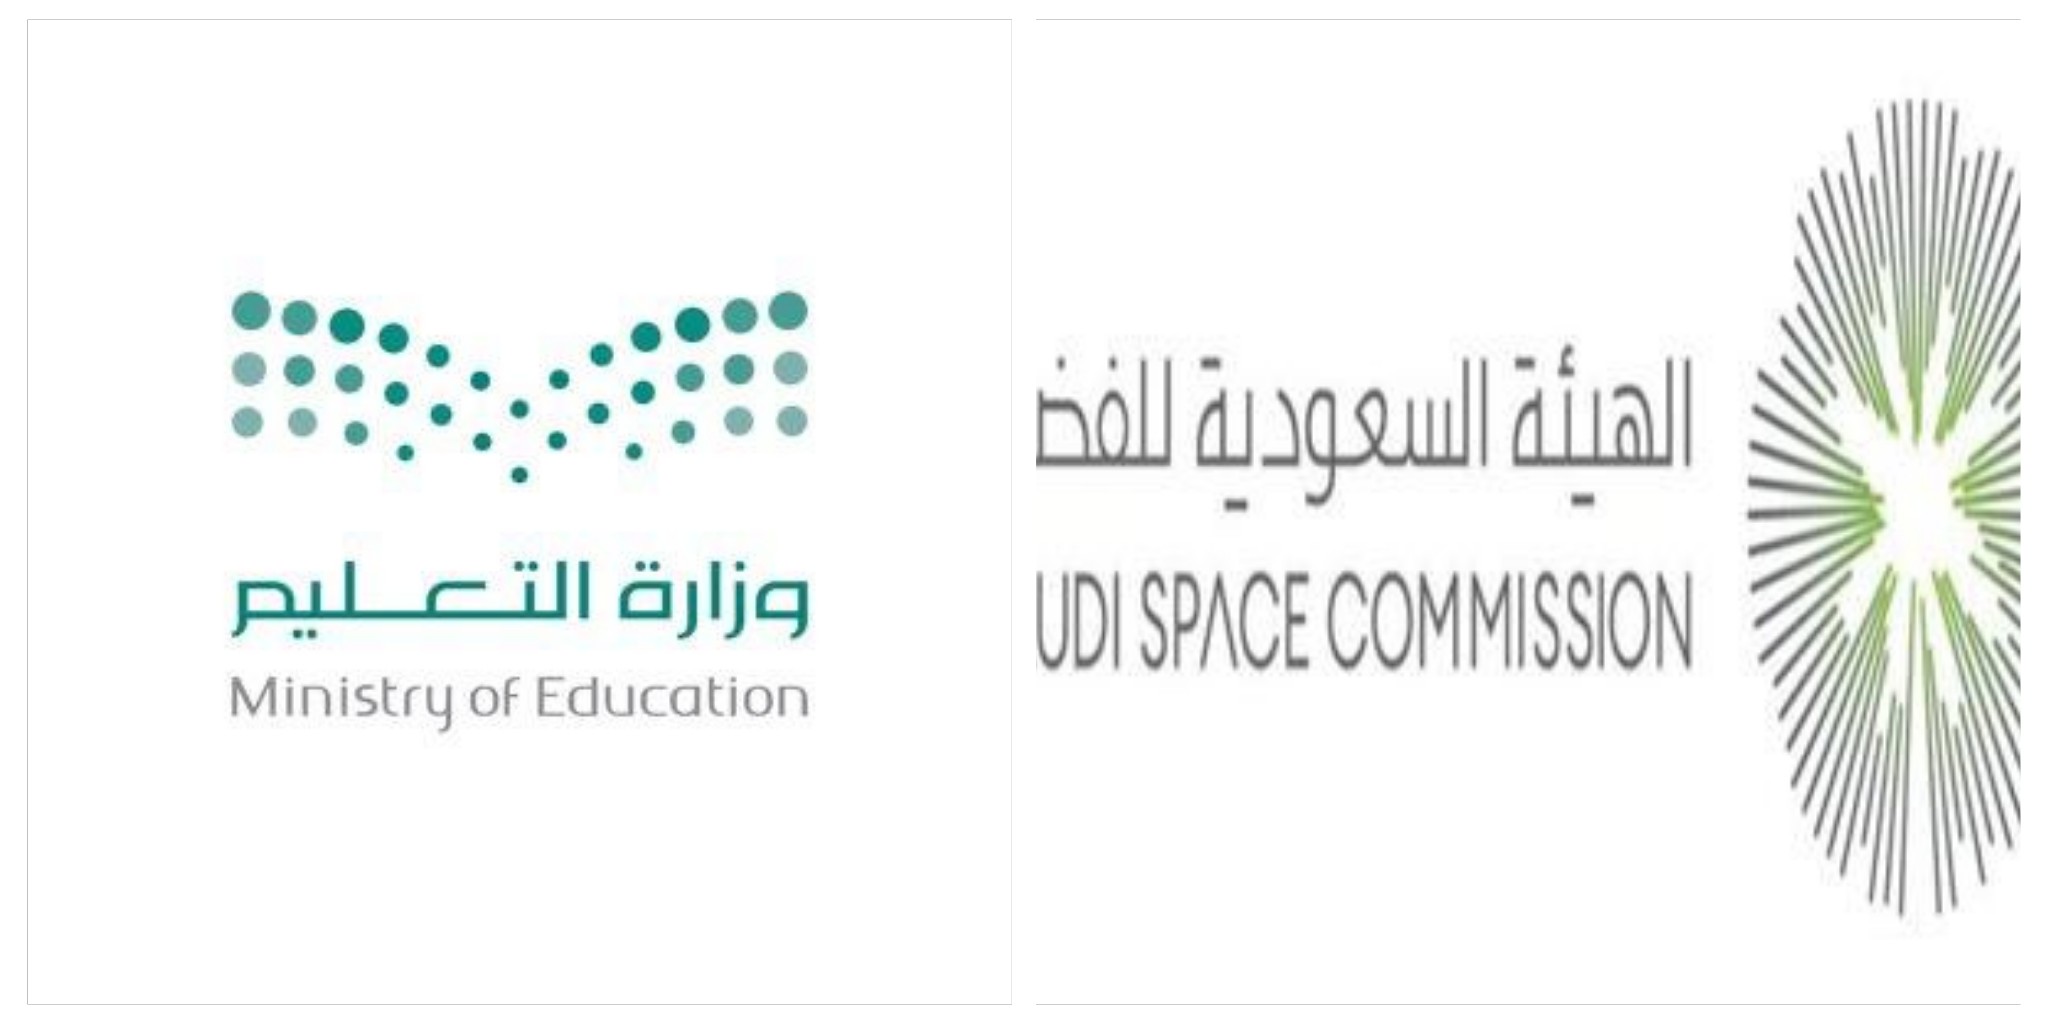 وزارة التعليم والهيئة السعودية للفضاء تُطلقان البرنامج الصيفي “9 رحلات للفضاء”